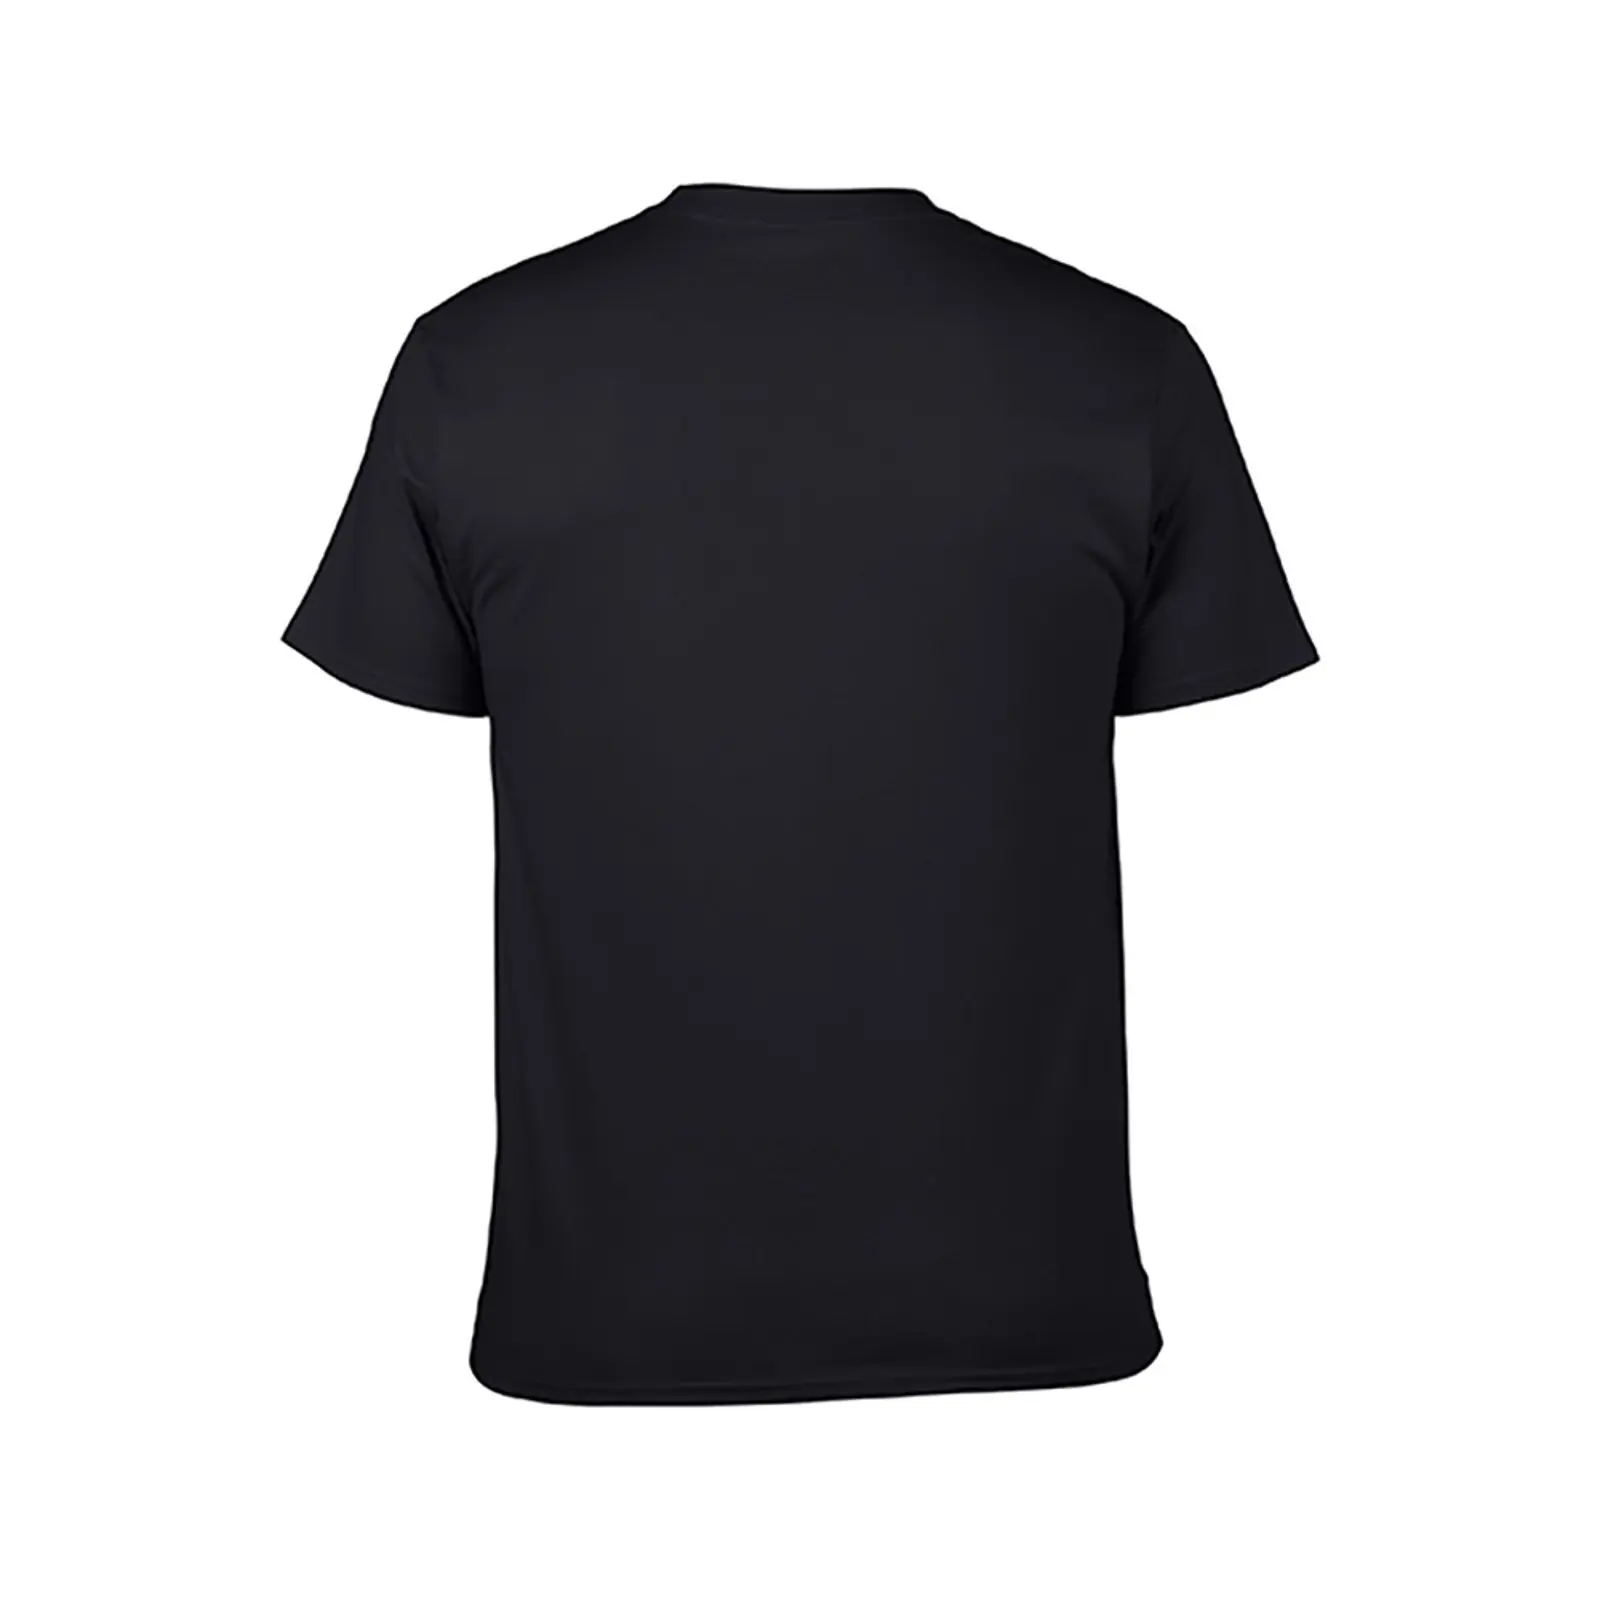 Бесплатная футболка Park Kang Doo, спортивные летние топы, мужские винтажные футболки. Изображение 2